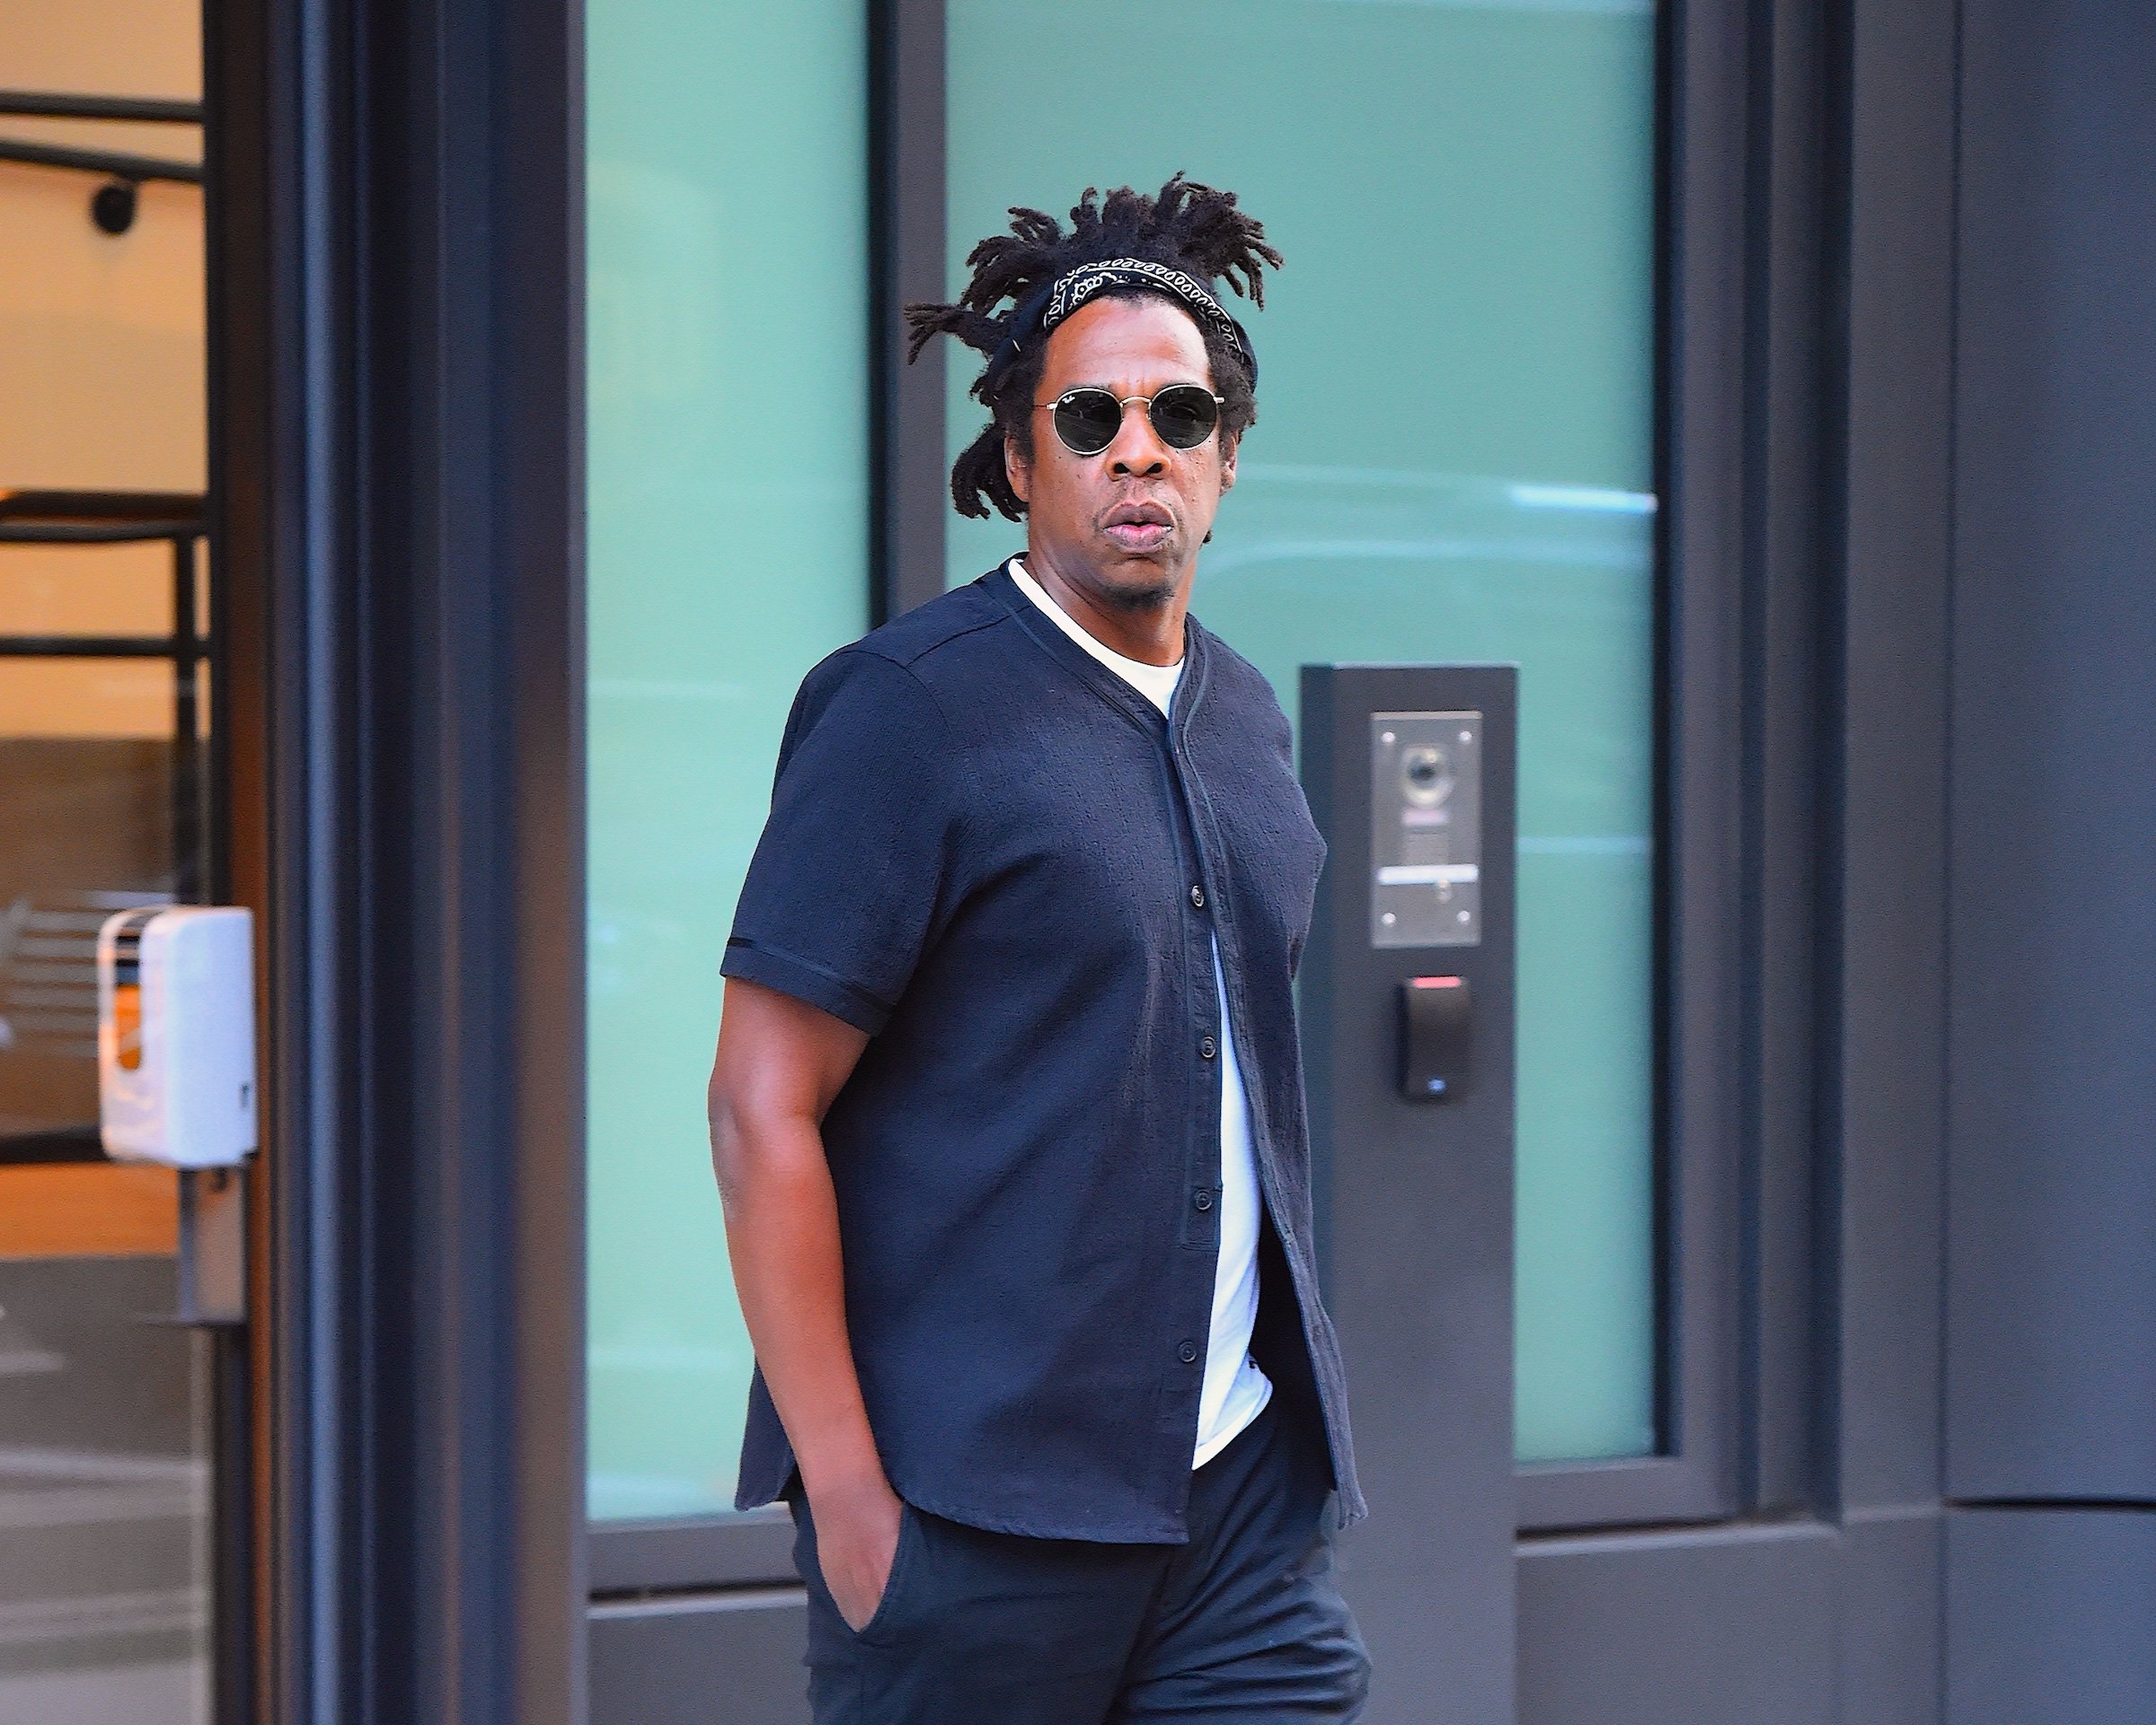 Jay-Z walking in NYC